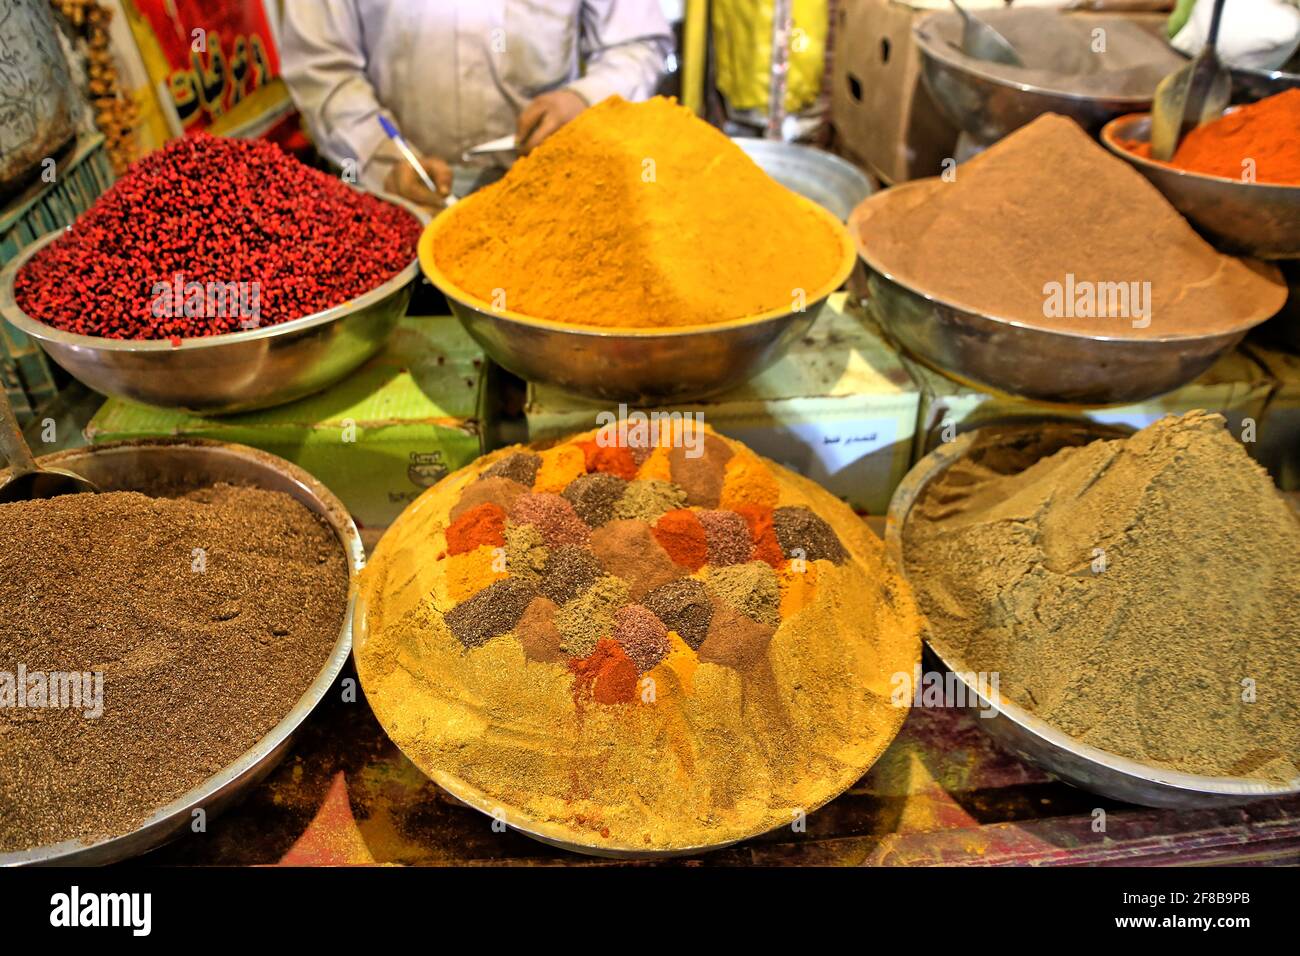 Gewürze und Trockenfrüchte auf einem orientalischen Basar Stock Photo